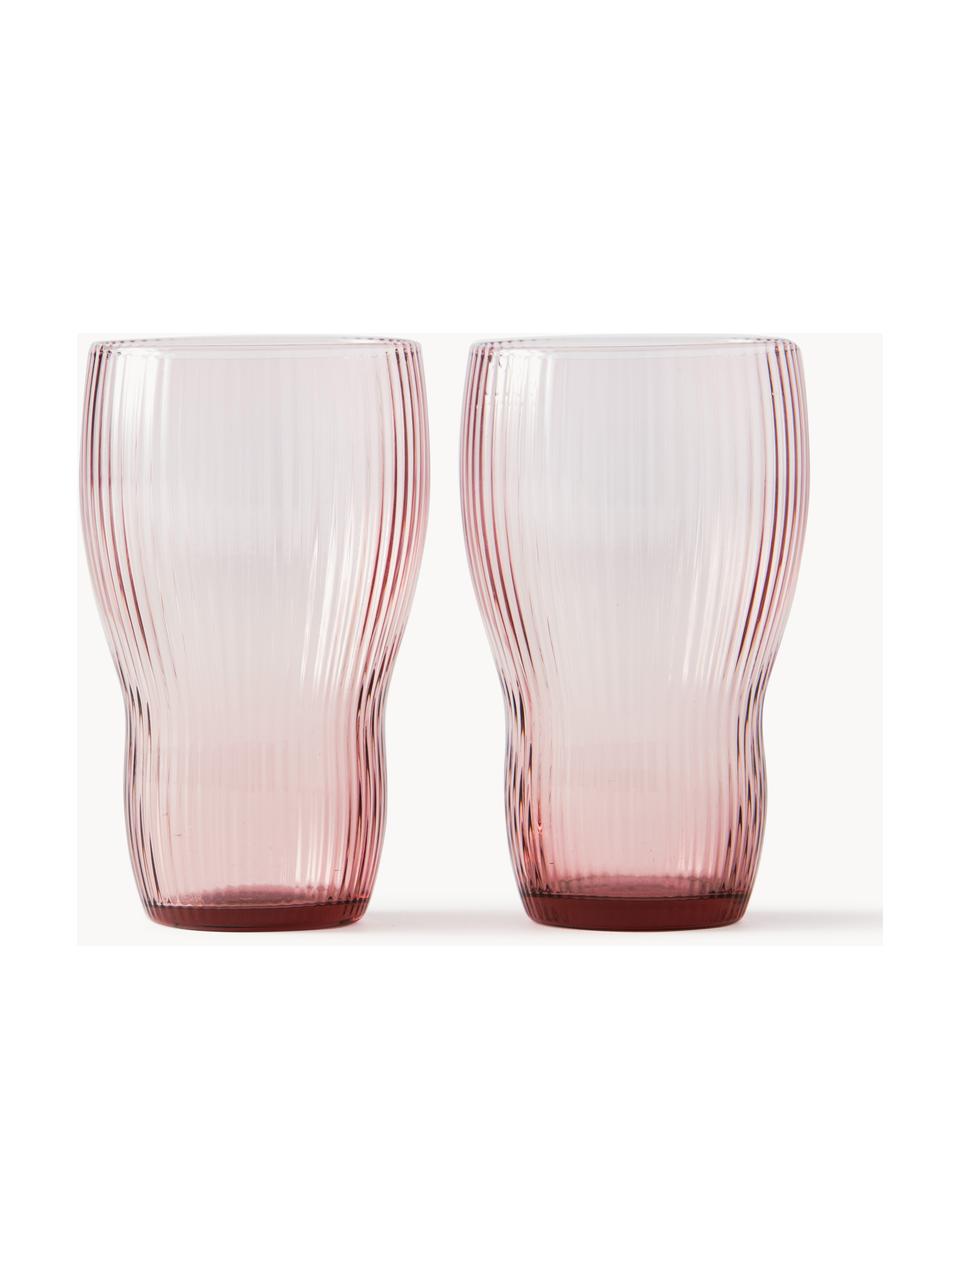 Mondgeblazen longdrinkglas Pum met groefstructuur, 2 stuks, Glas, mondgeblazen, Roze, Ø 11 x H 16 cm